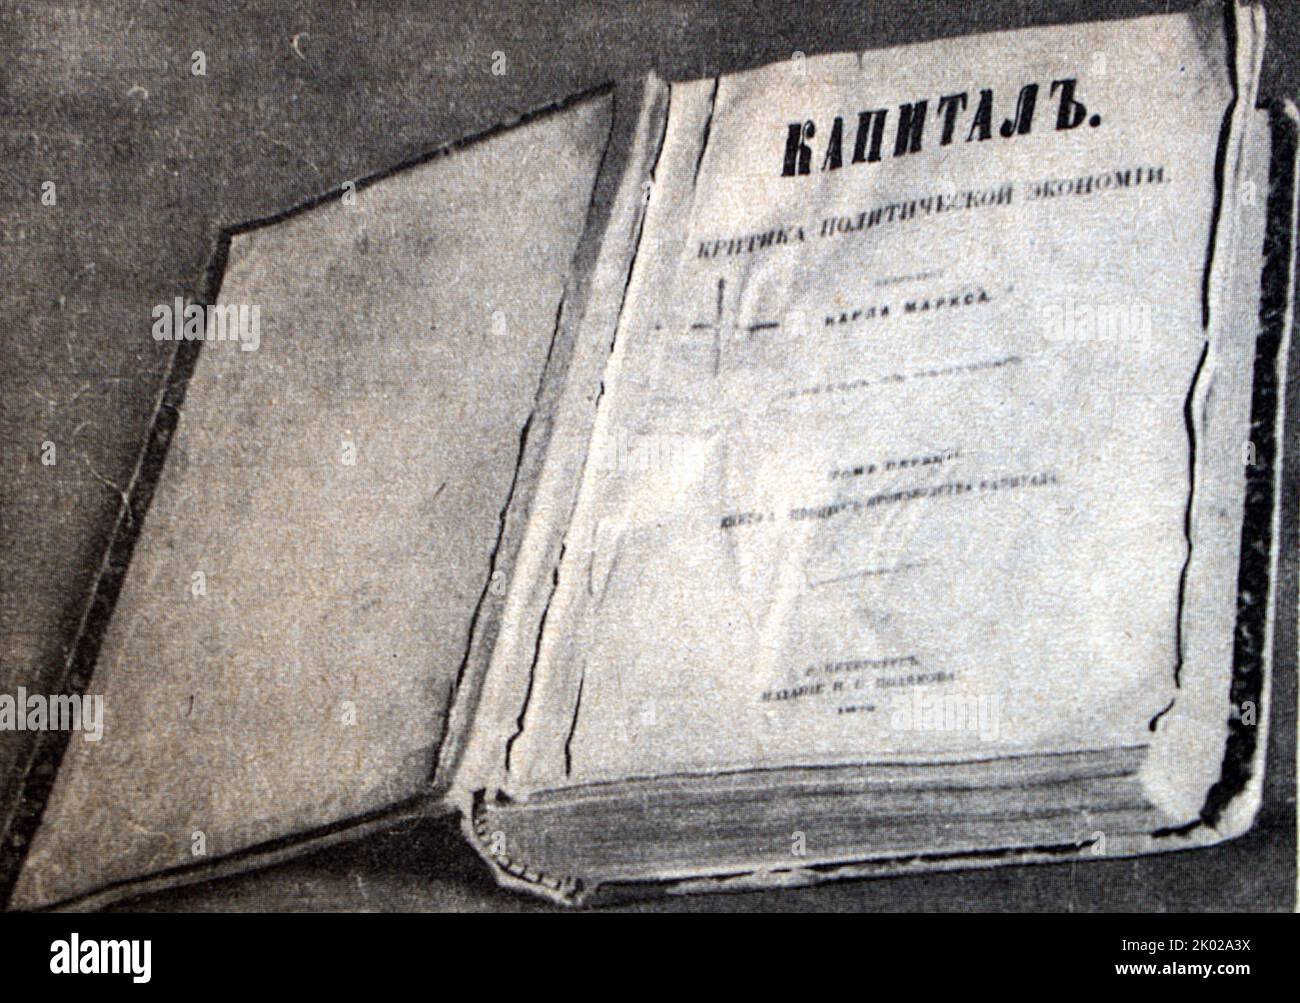 La première édition russe de 'Capital' par K. Marx. La première publication traduite de Das Kapital a été publiée dans l'Empire russe en mars 1872 Banque D'Images